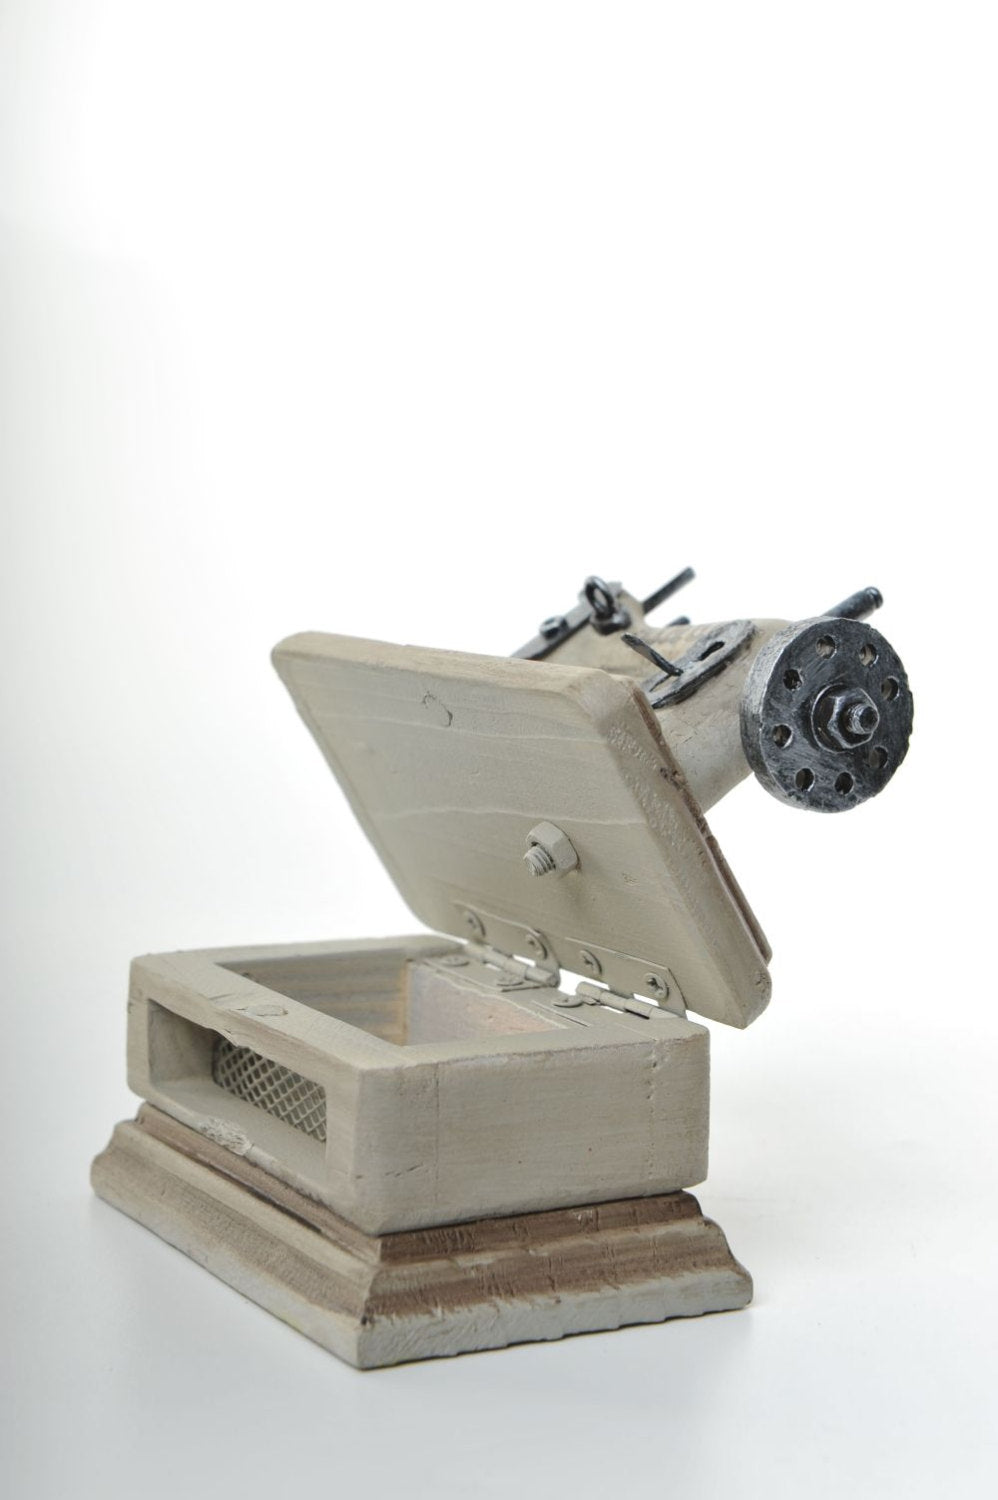 Miniature Unique White Singer Sewing Machine Vintage Decoration